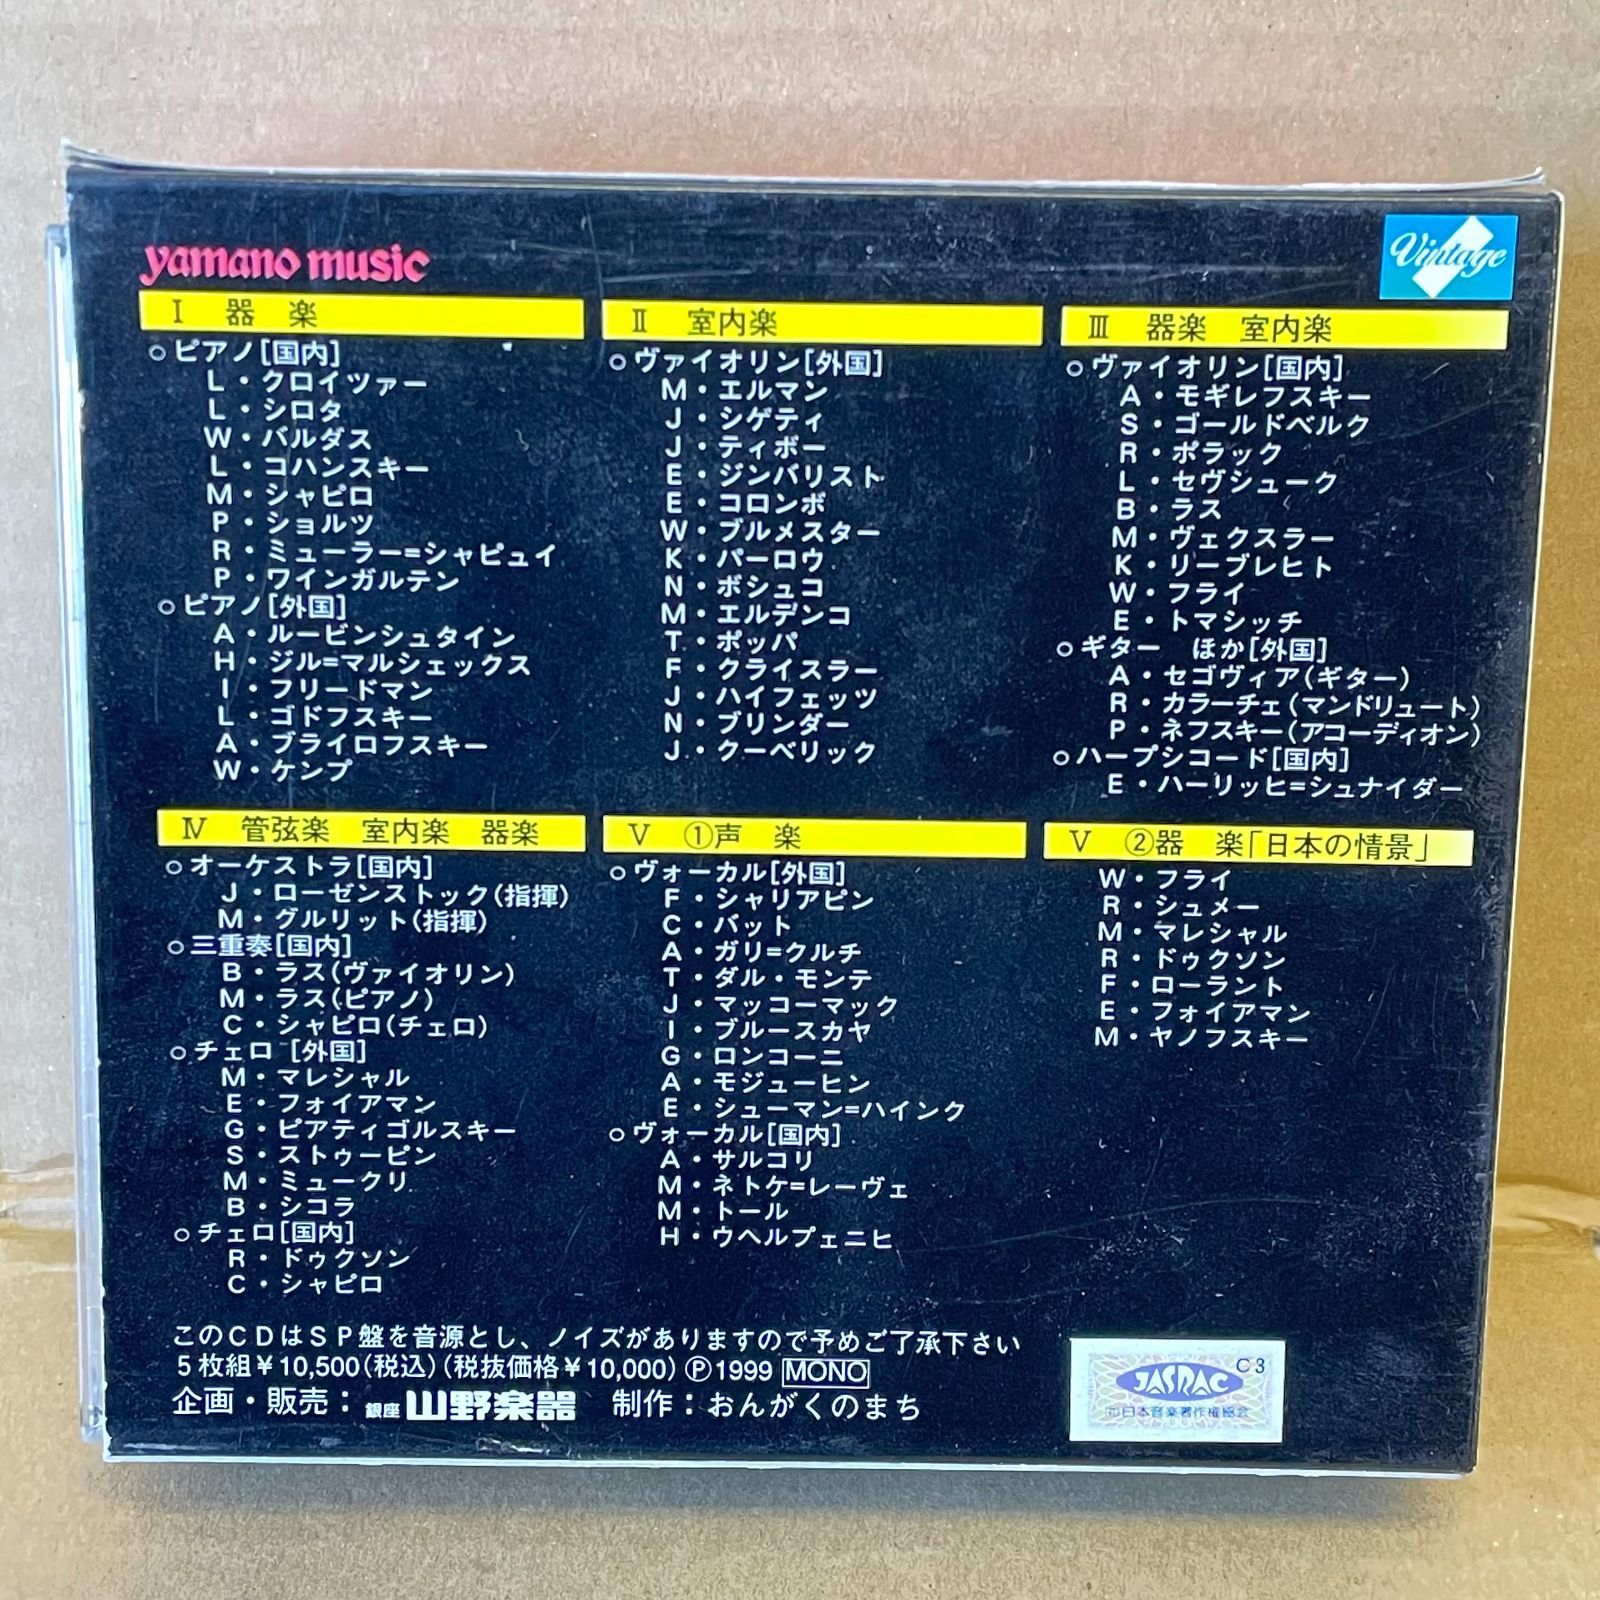 5枚組みCD箱 日本洋楽史 来日アーティスト篇 SP時代の名演奏家 山野楽器制作 YMCD-1074 クラシック イージー 器楽室内楽管弦楽  おんがくのまち